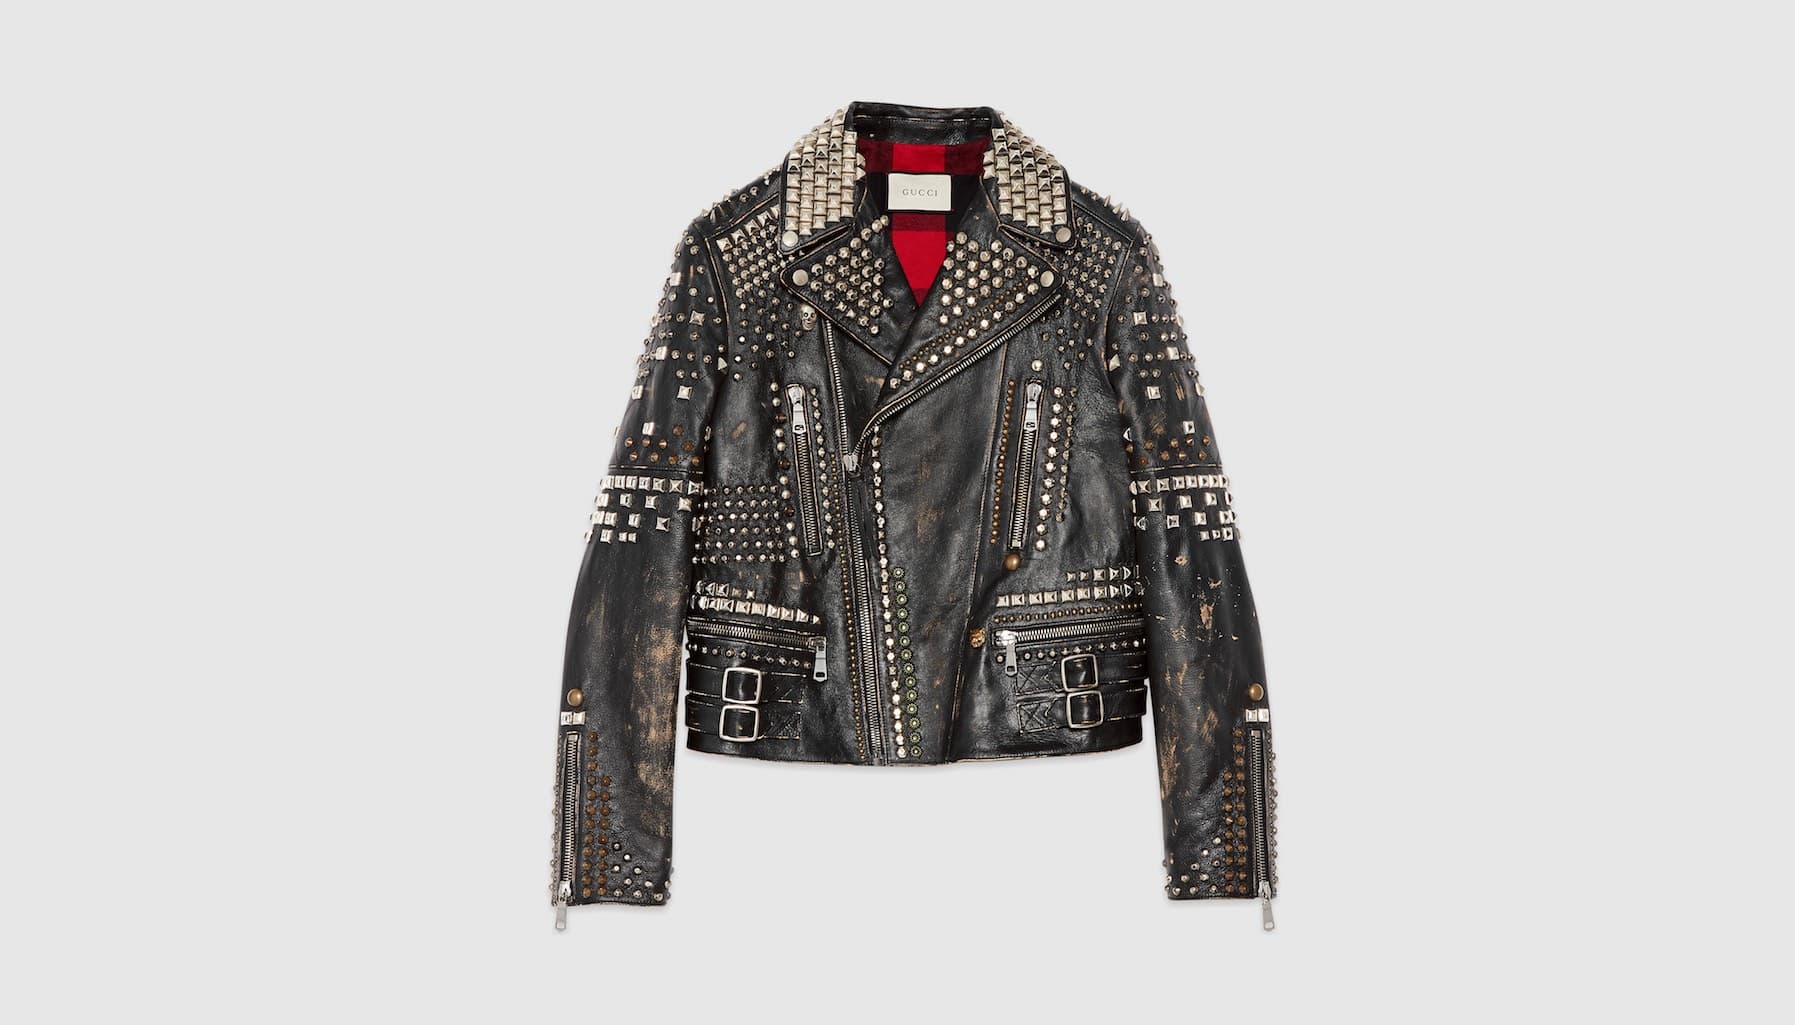 Giá 18.650 USD, chiếc áo khoác da của Gucci có gì đặc biệt?